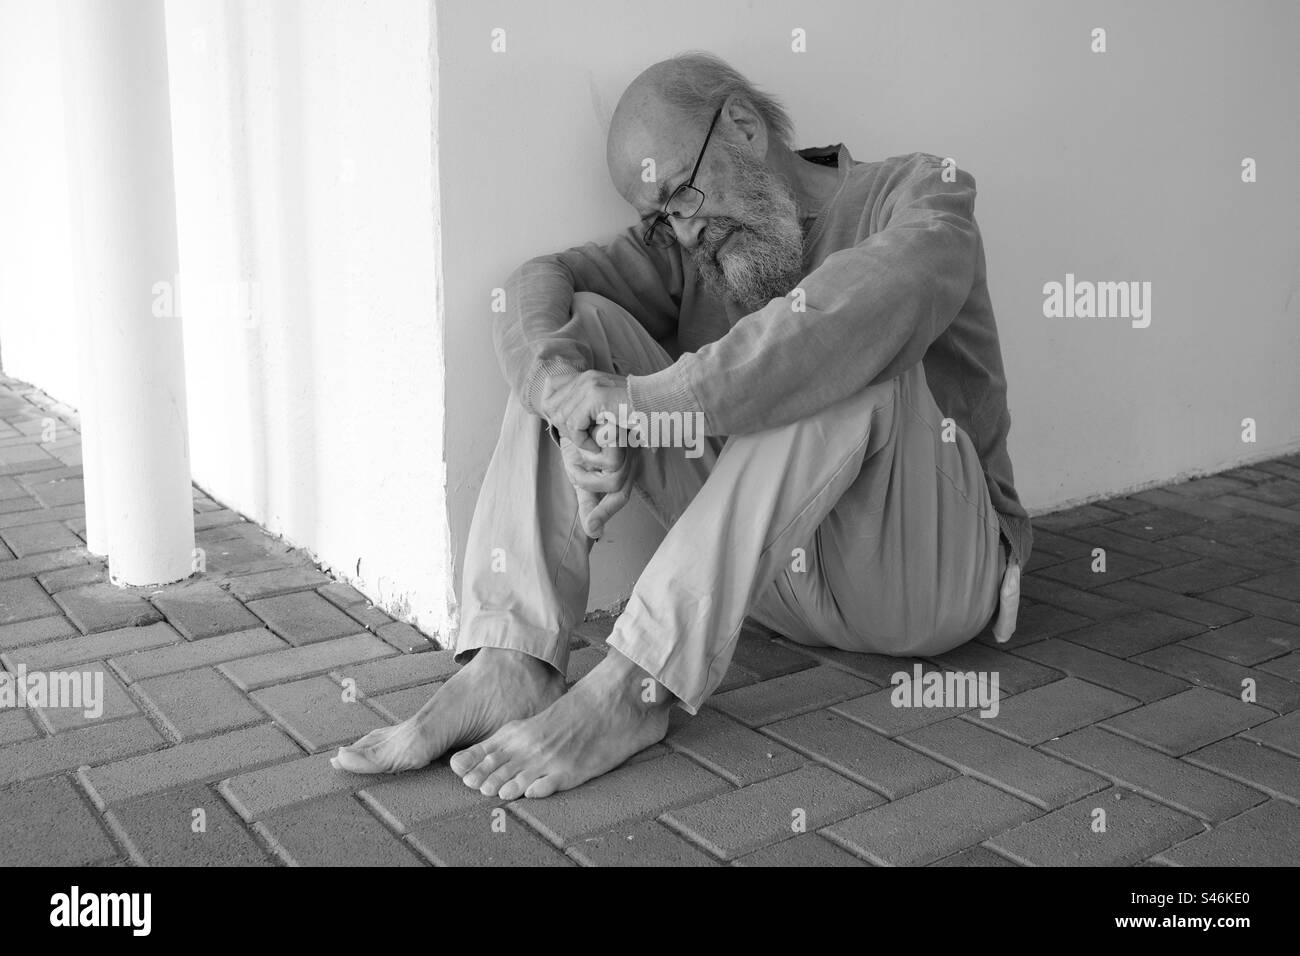 Senior homeless sitting in town Stock Photo